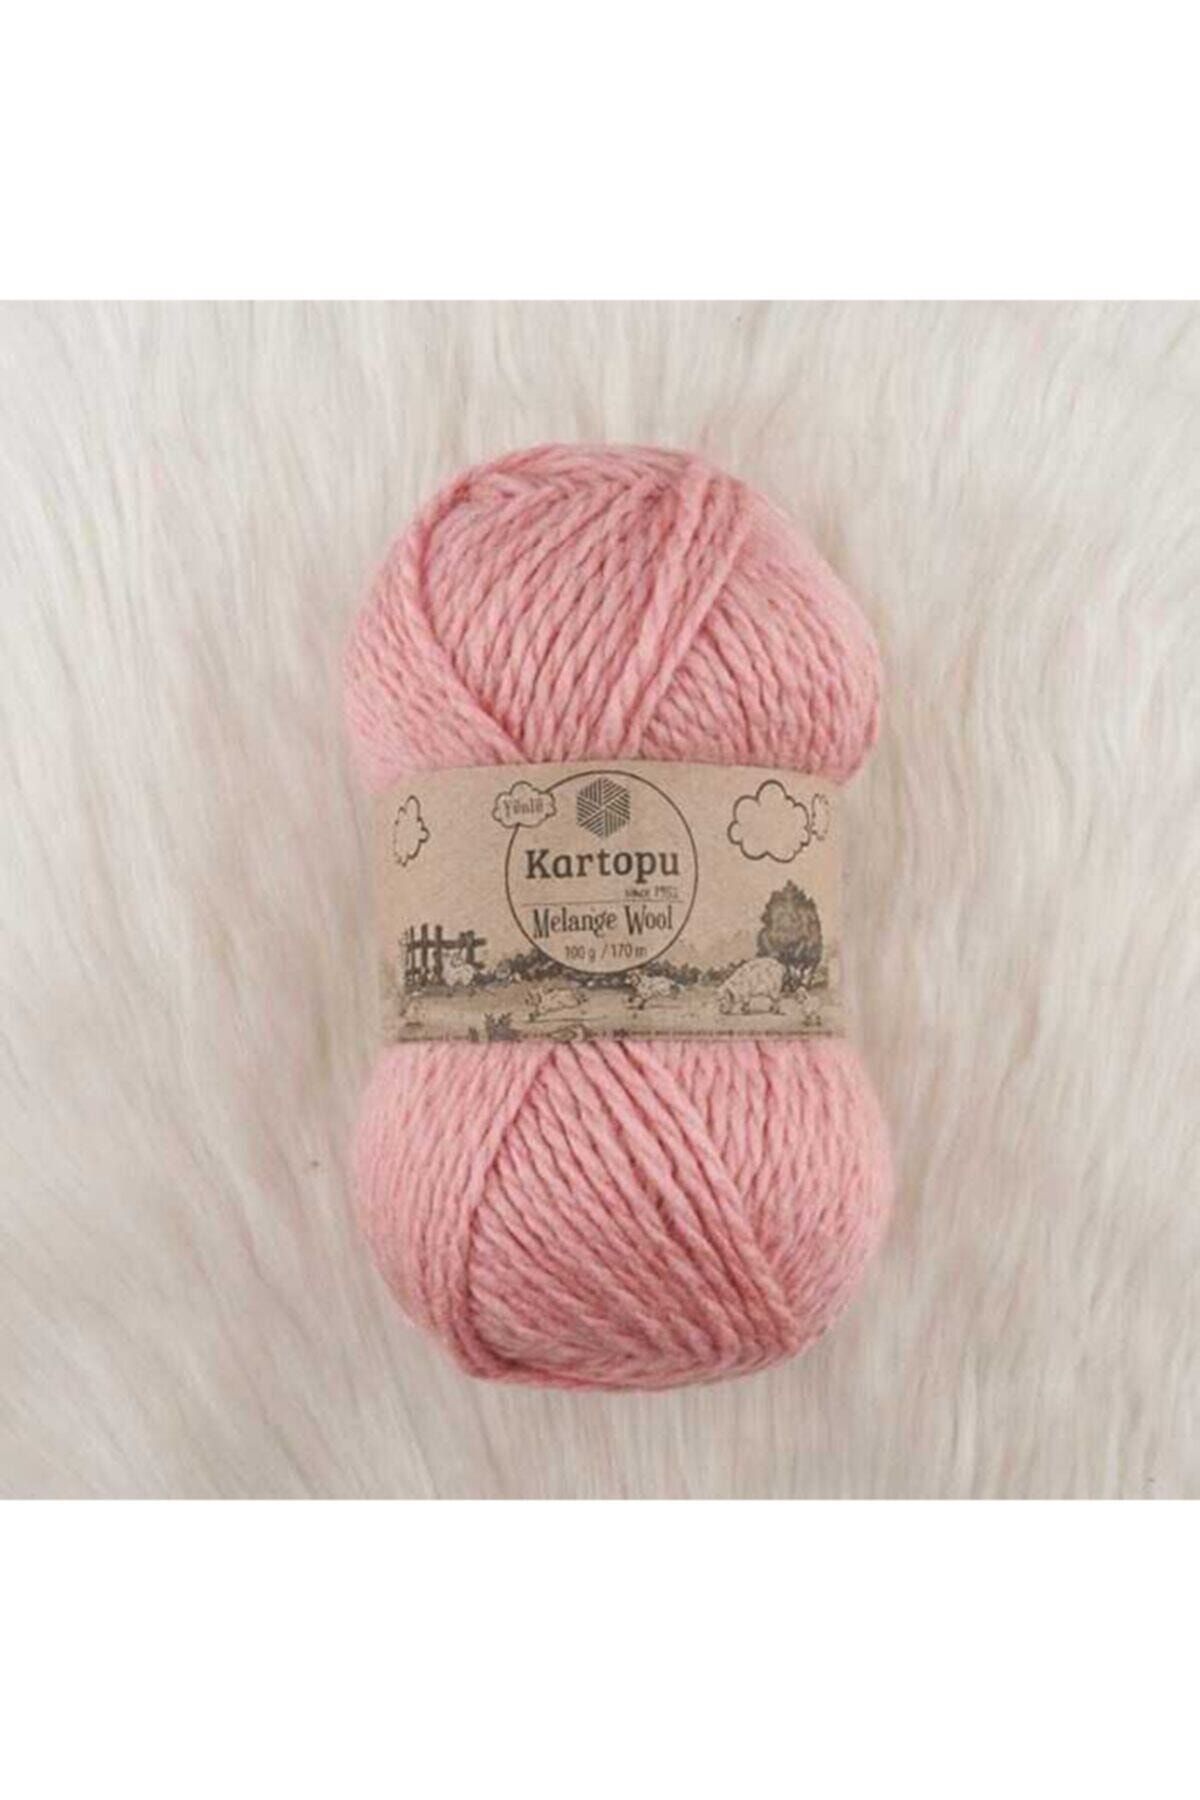 Kartopu Melange Wool El Örgü Ipi 100 Gr.170 M. 2116